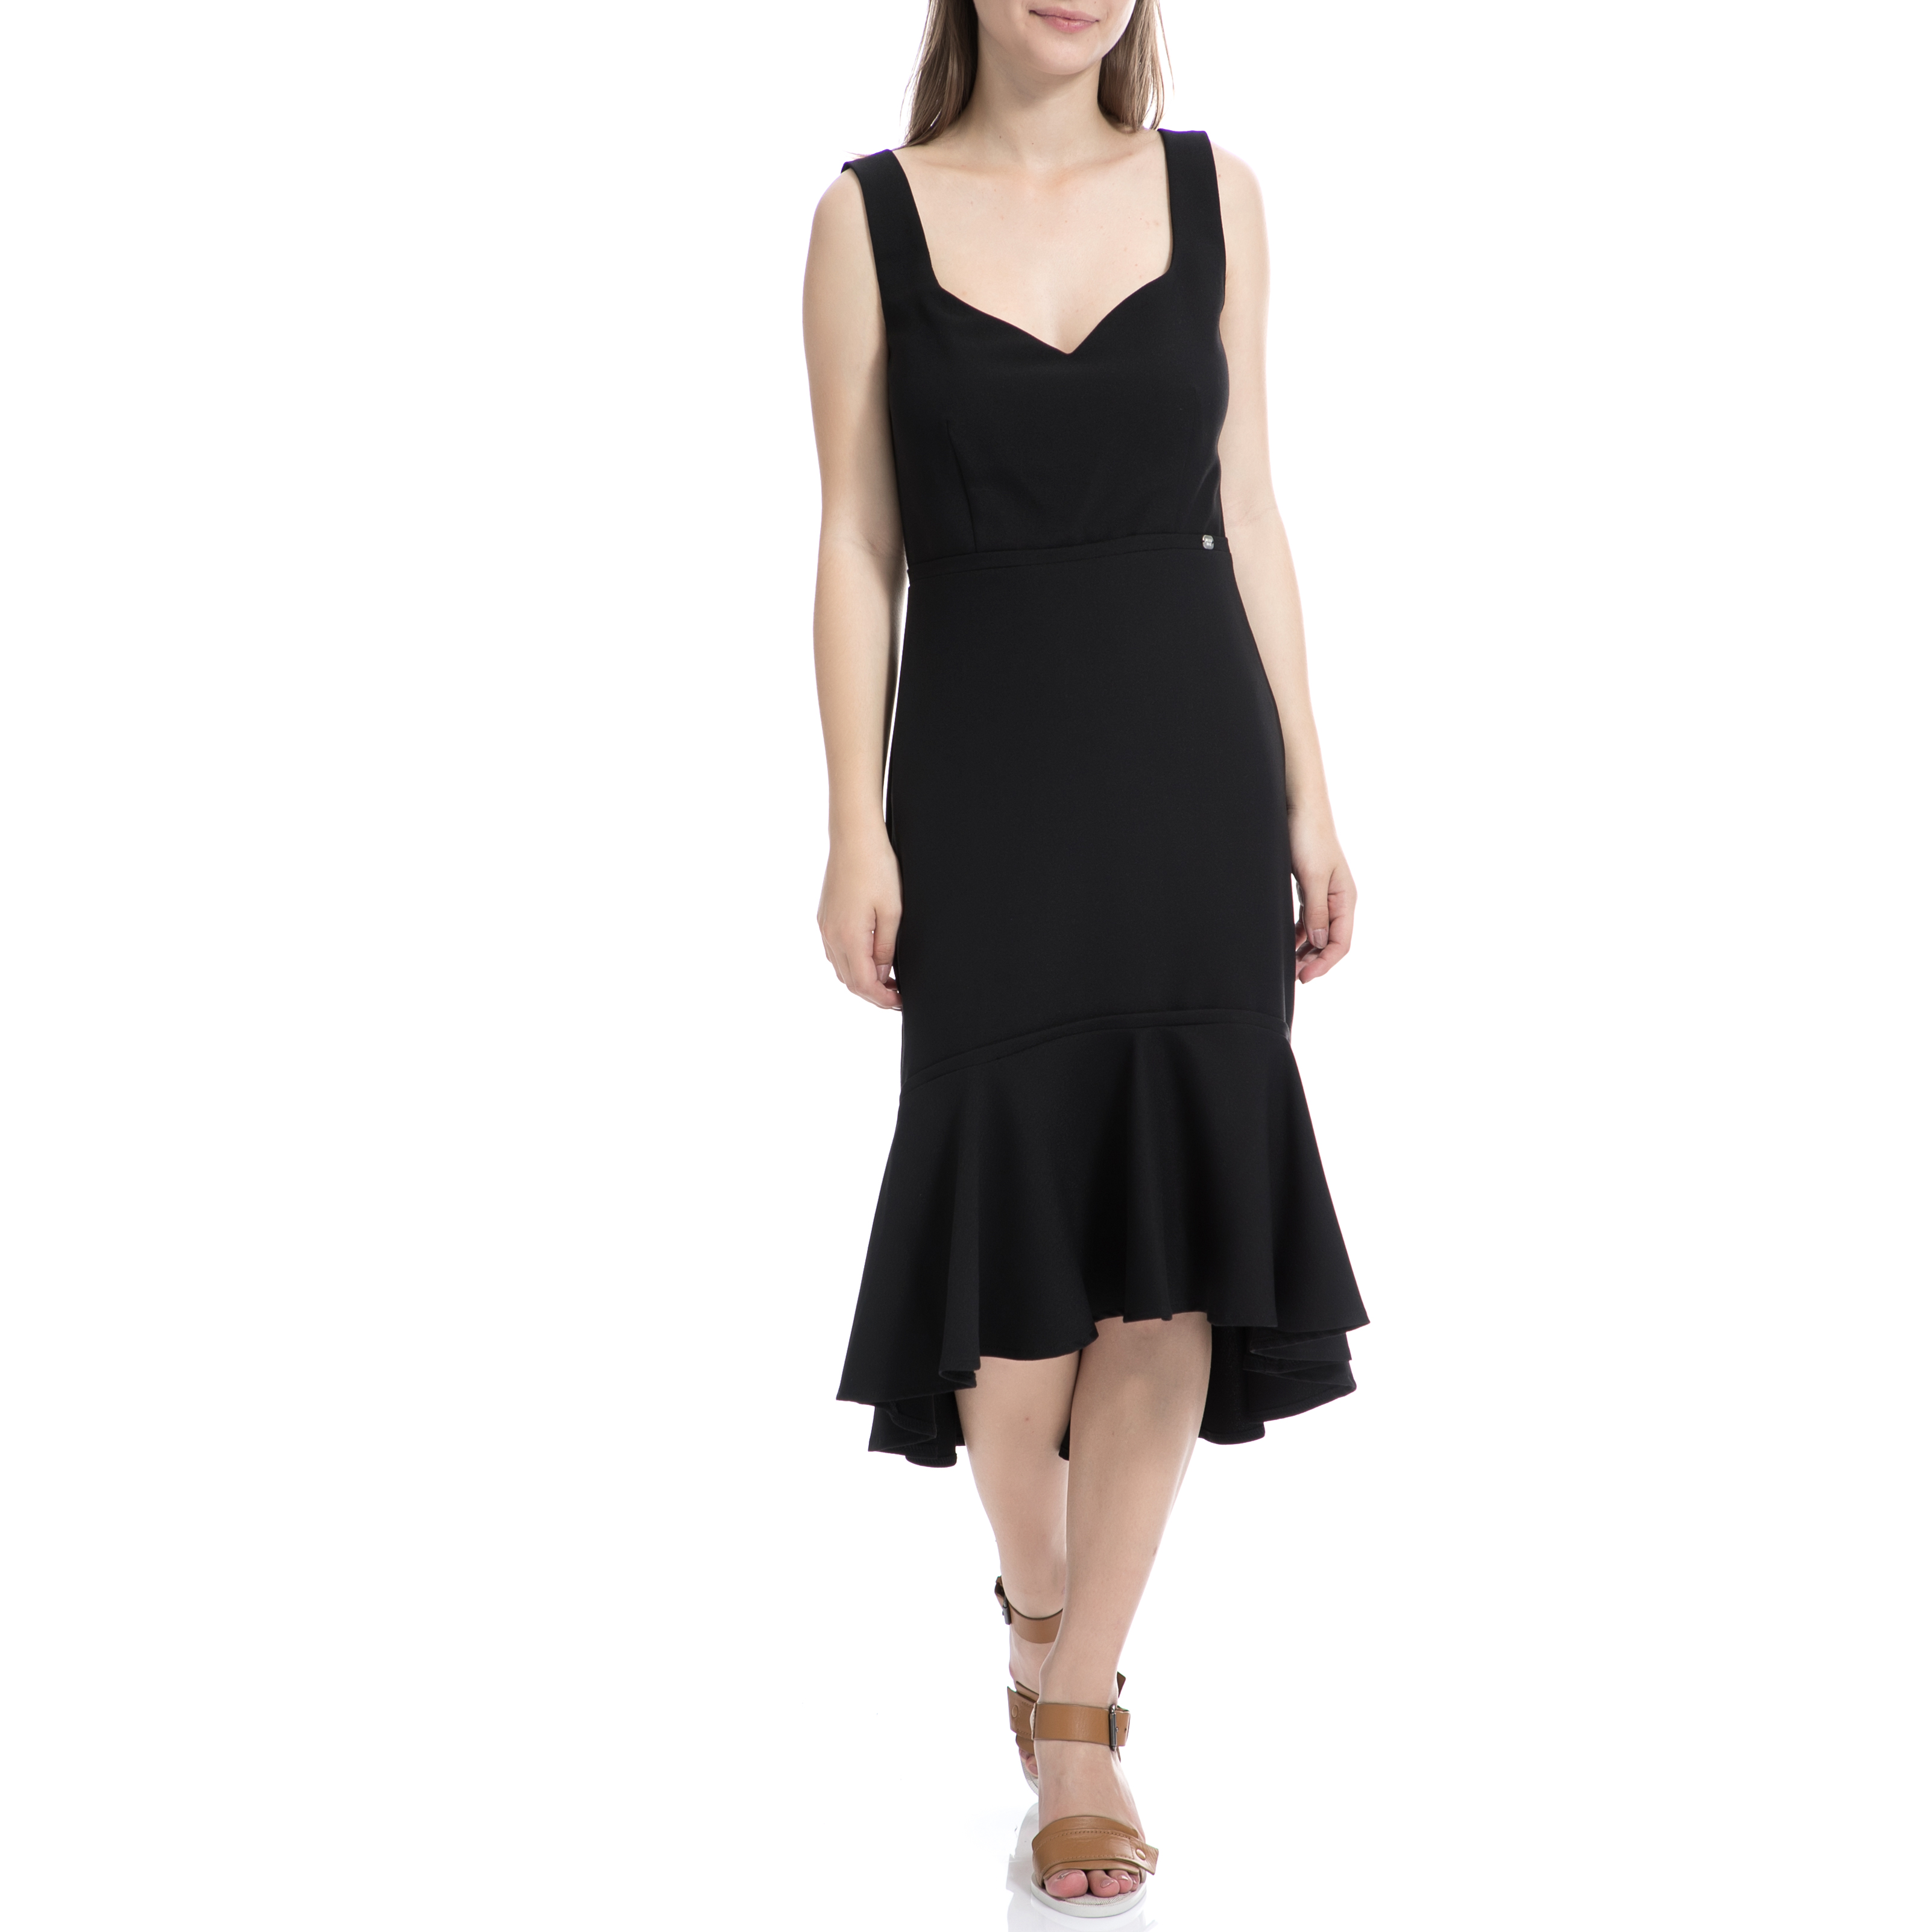 Γυναικεία/Ρούχα/Φορέματα/Μέχρι το γόνατο DENNY ROSE - Γυναικείο φόρεμα Denny Rose μαύρο